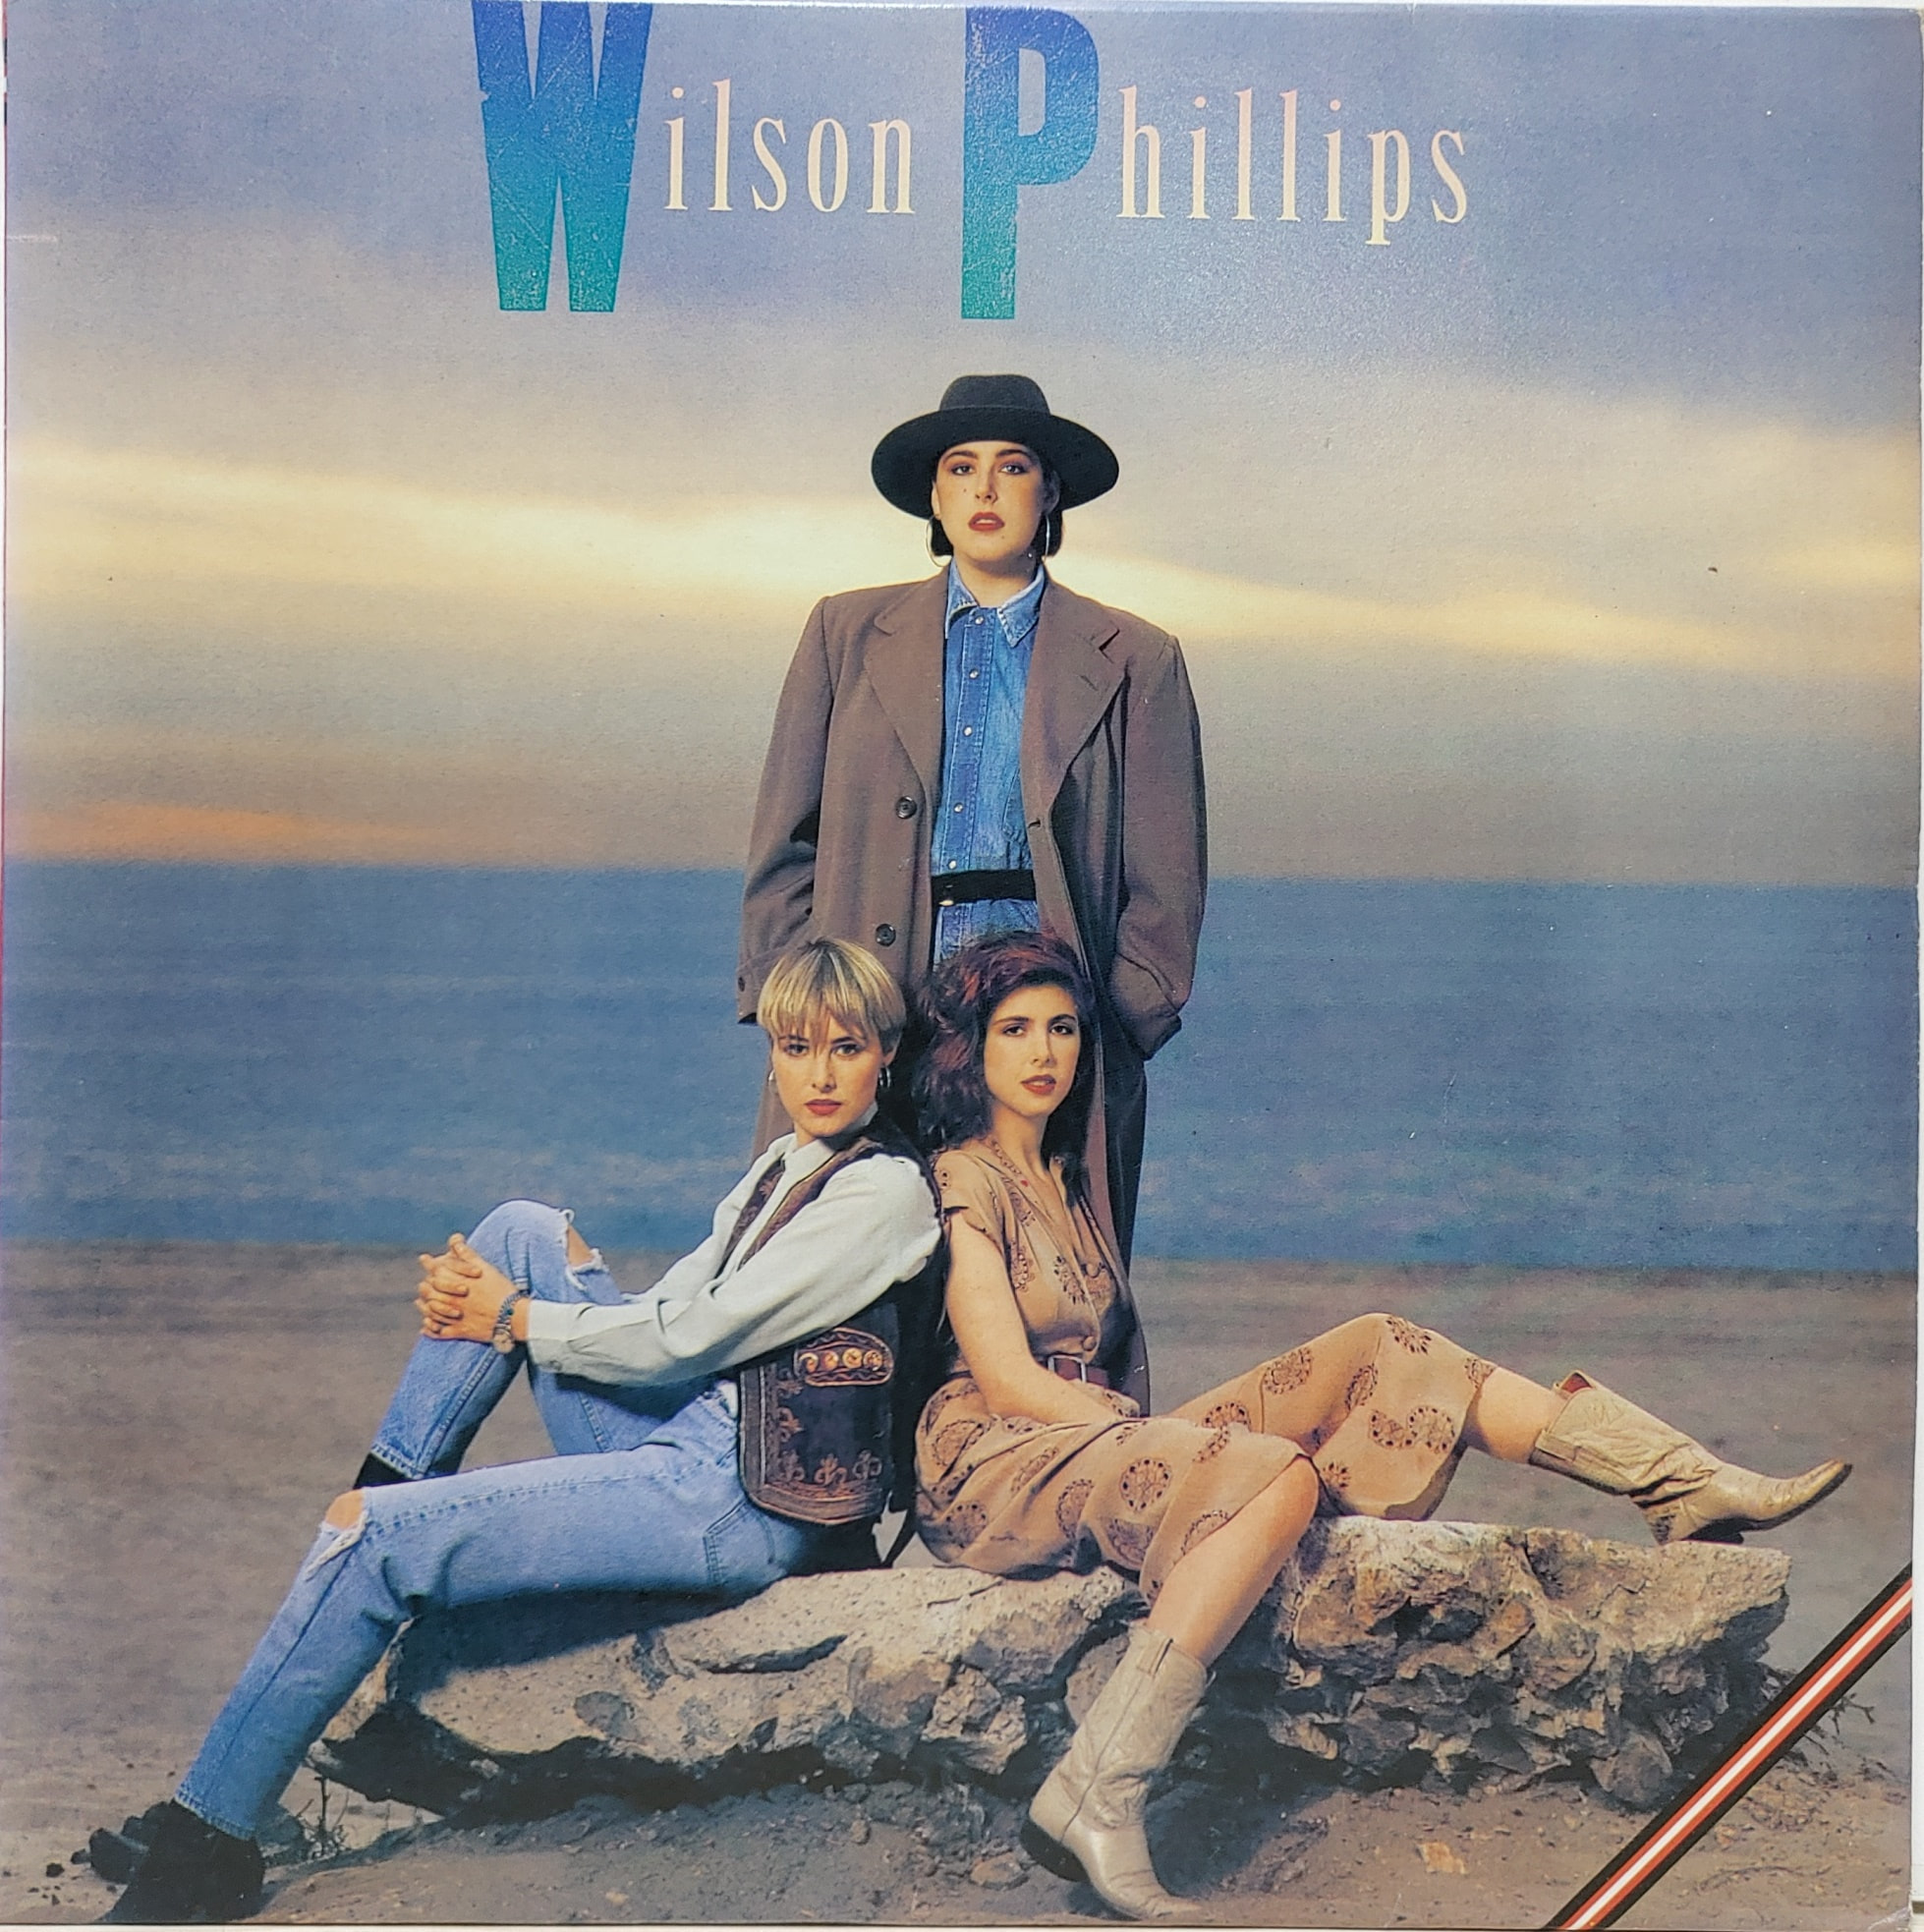 WILSON PHILLIPS